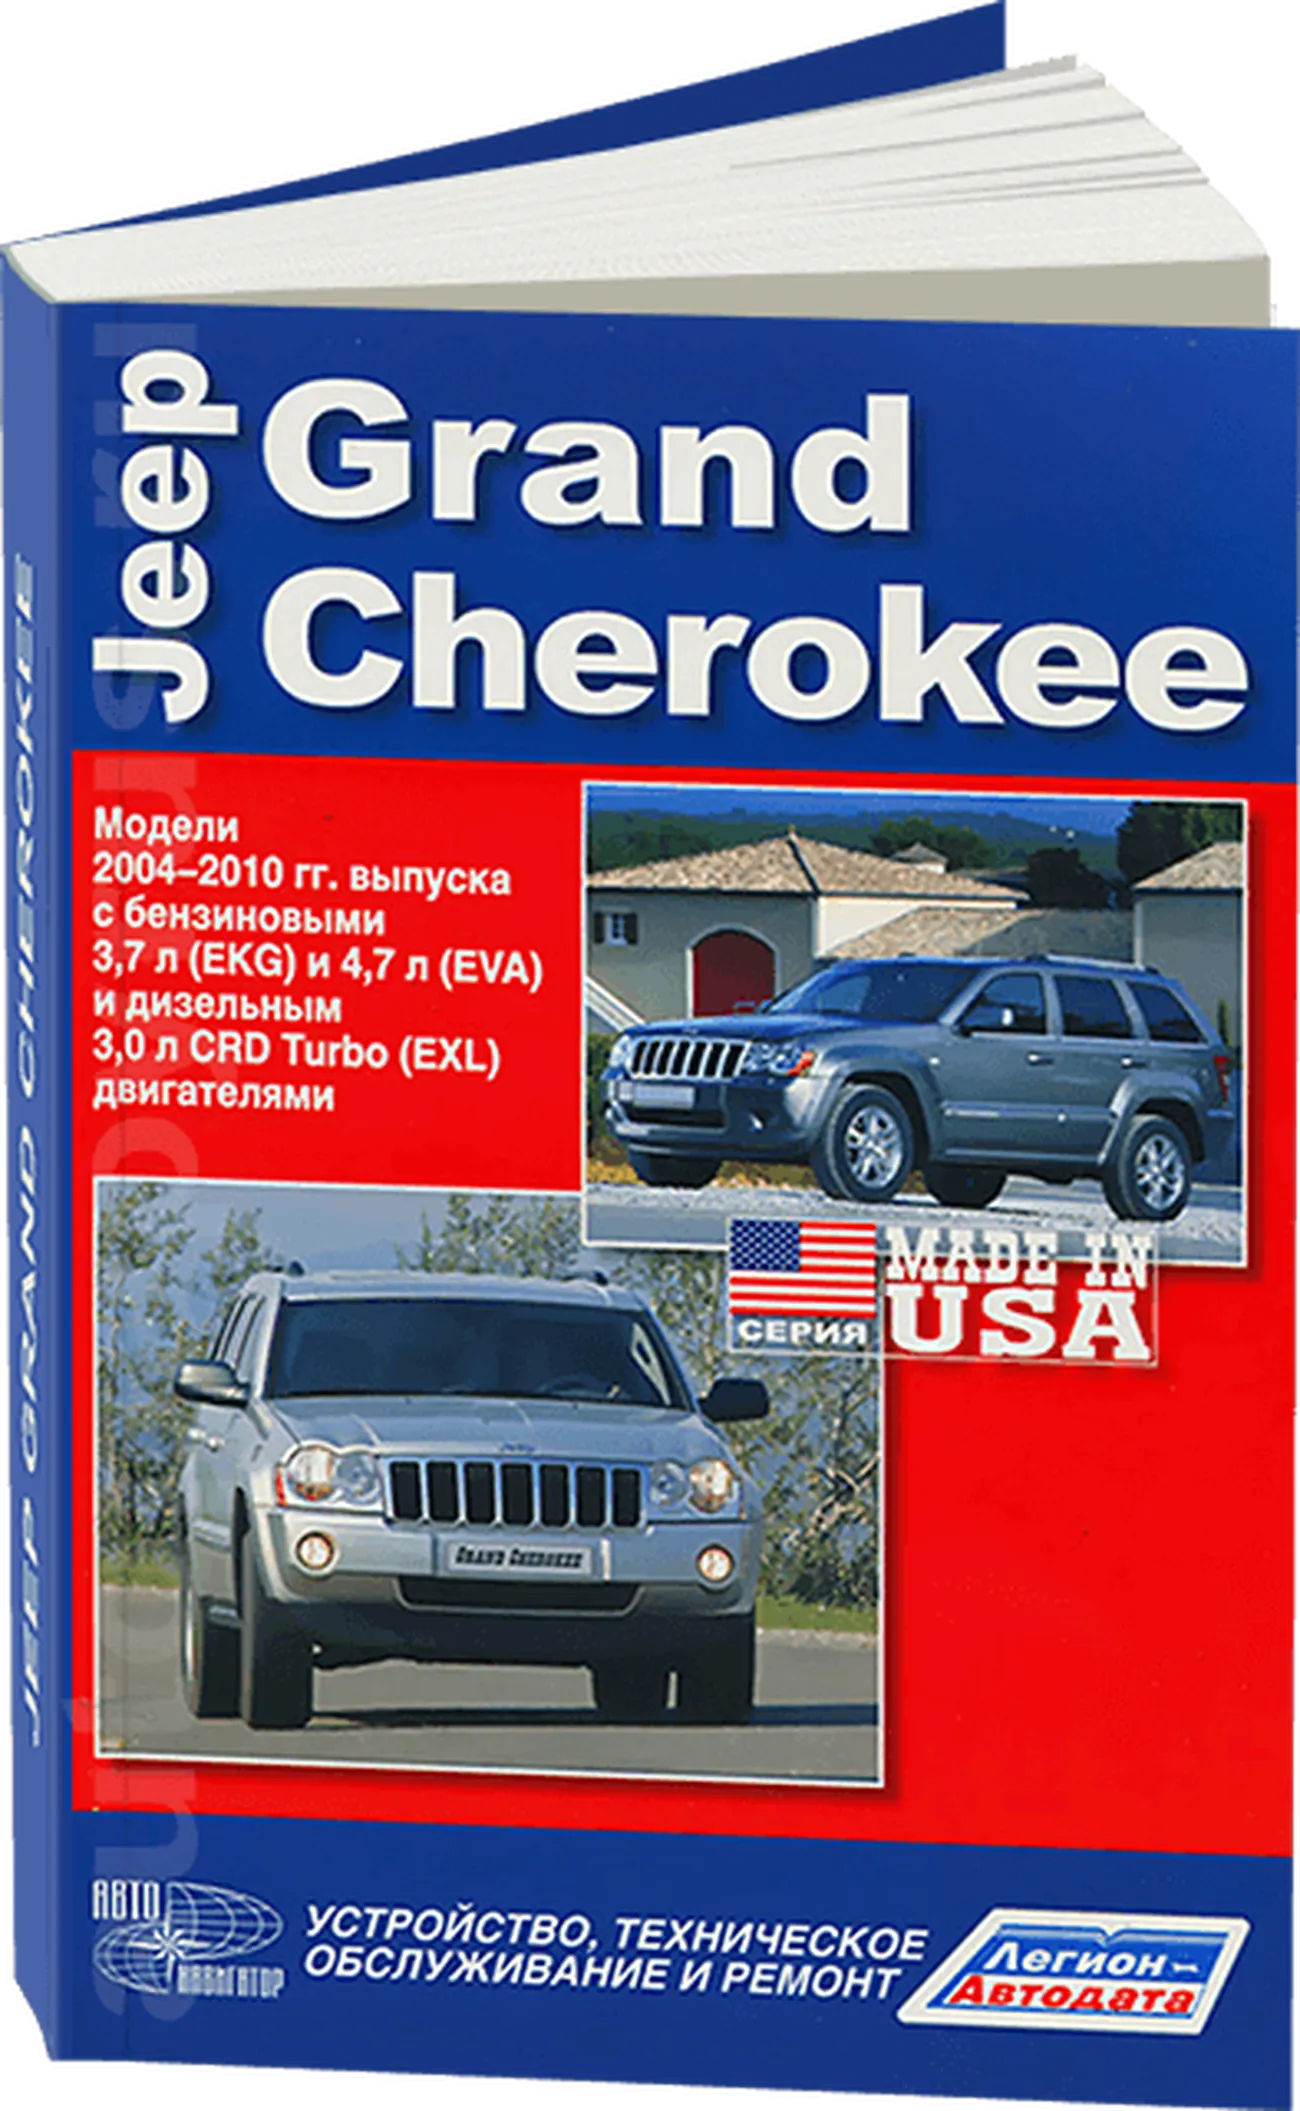 Книга: JEEP GRAND CHEROKEE (б , д) 2004-2010 г.в., рем., экспл., то | Легион-Aвтодата